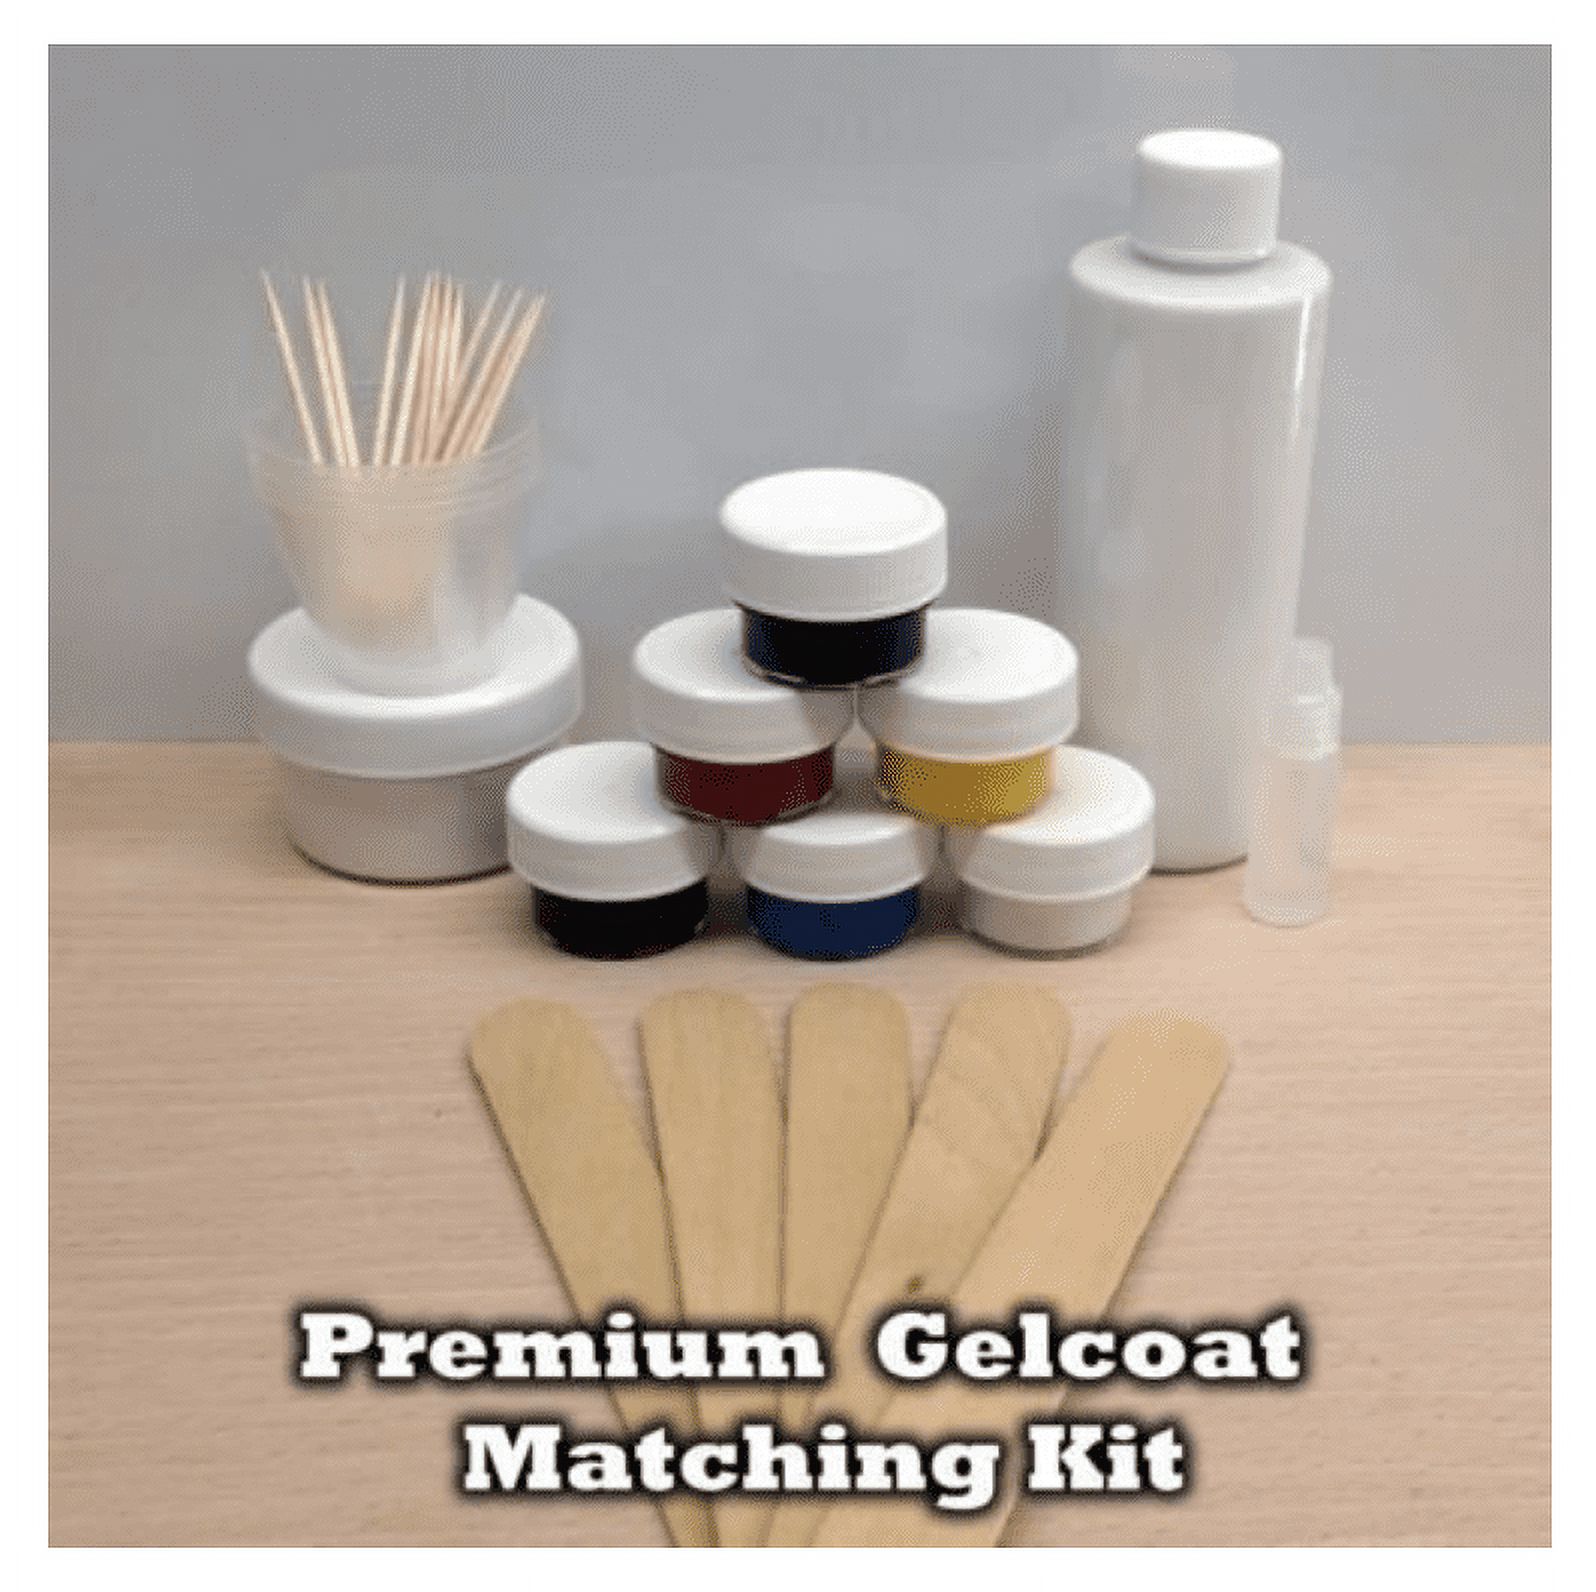 Gelcoat Repair Kit